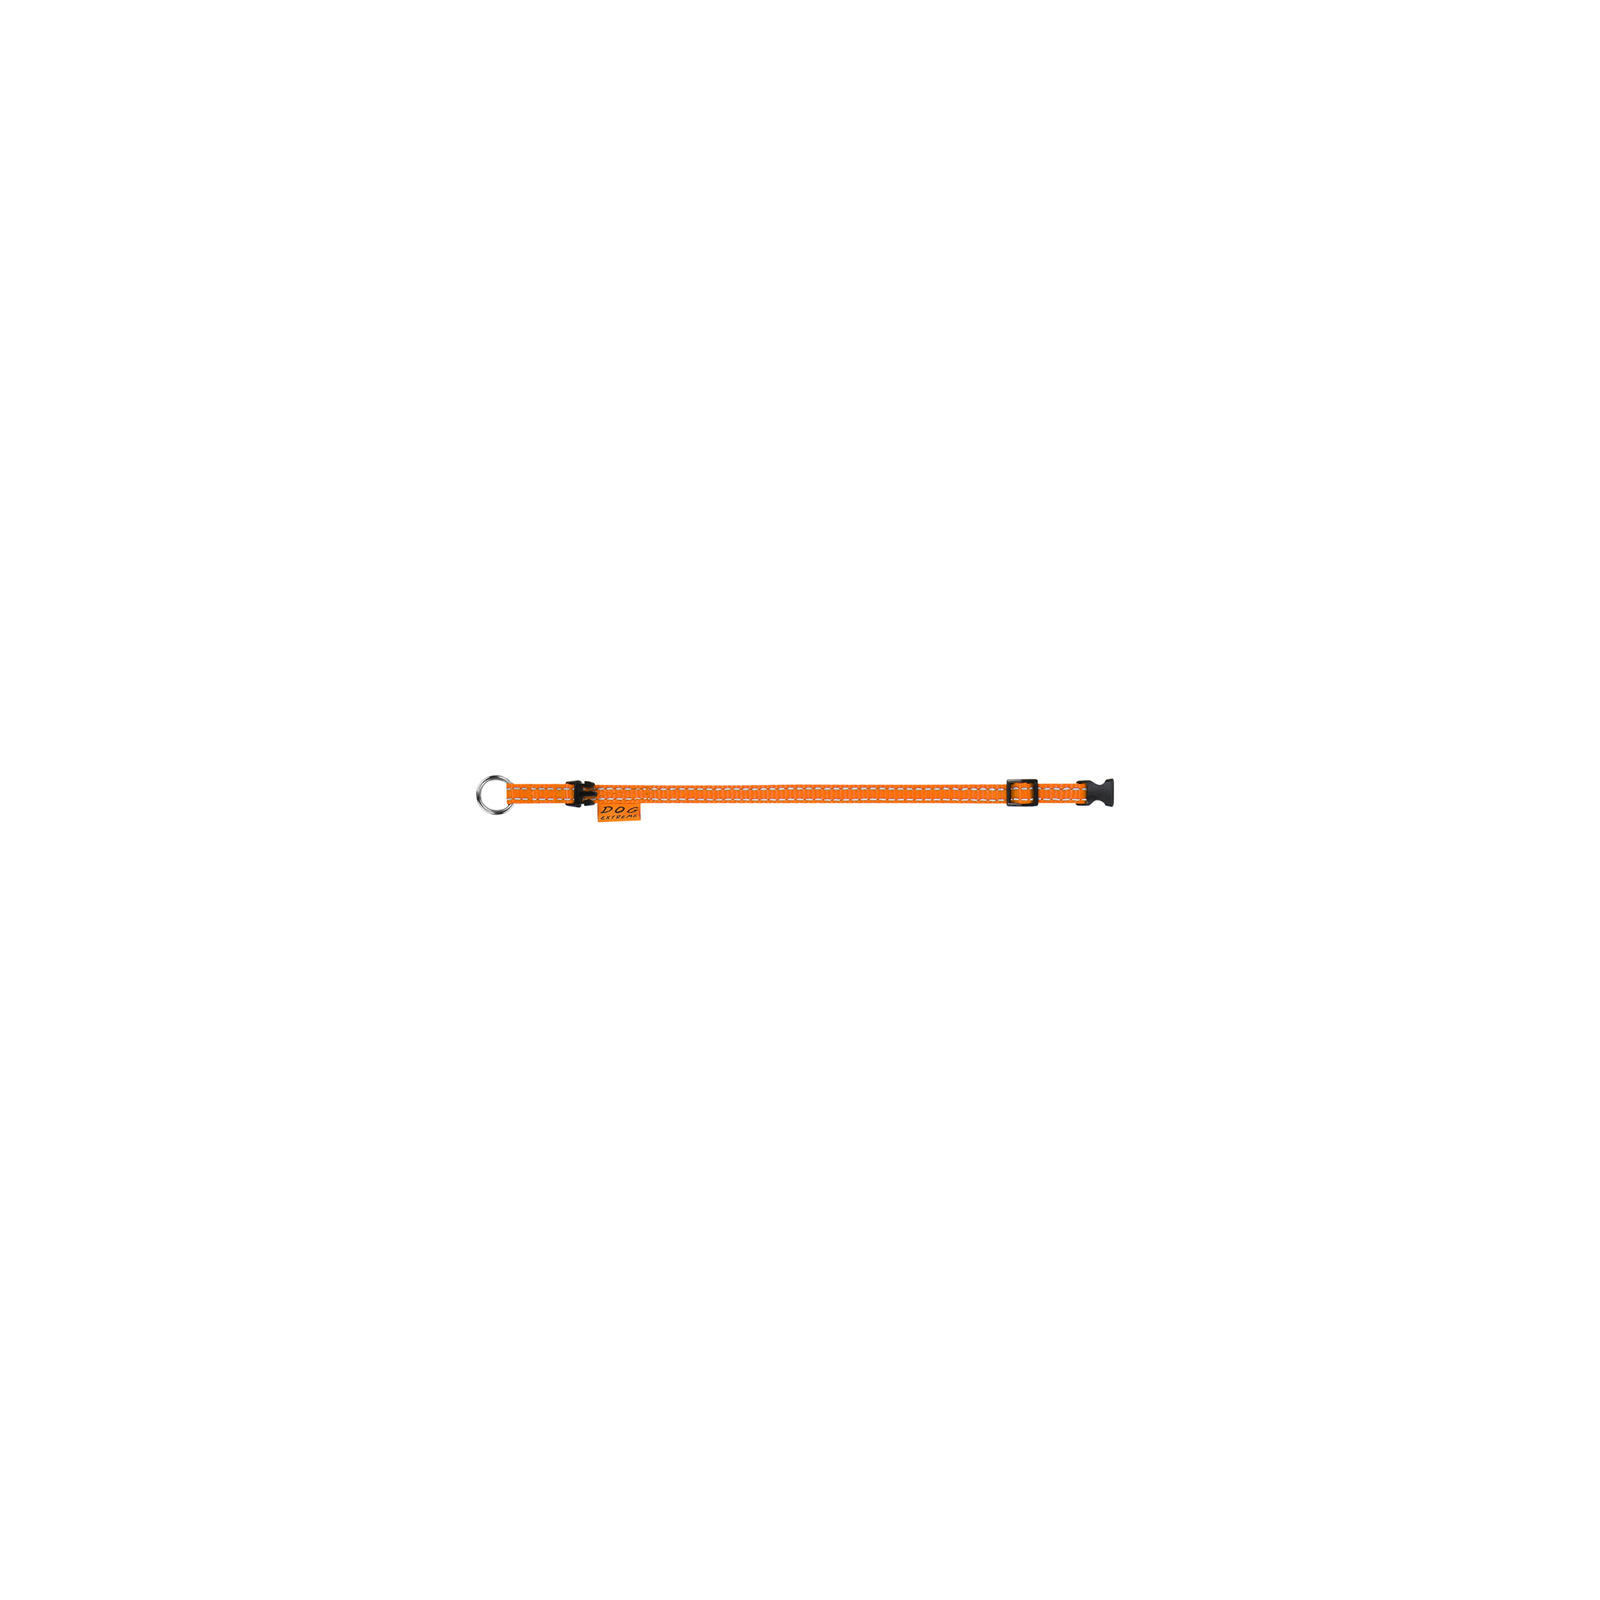 Ошейник для животных Dog Extreme из нейлона регулируемый Ш 25 мм Д 31-49 см оранжевый (02524) изображение 3